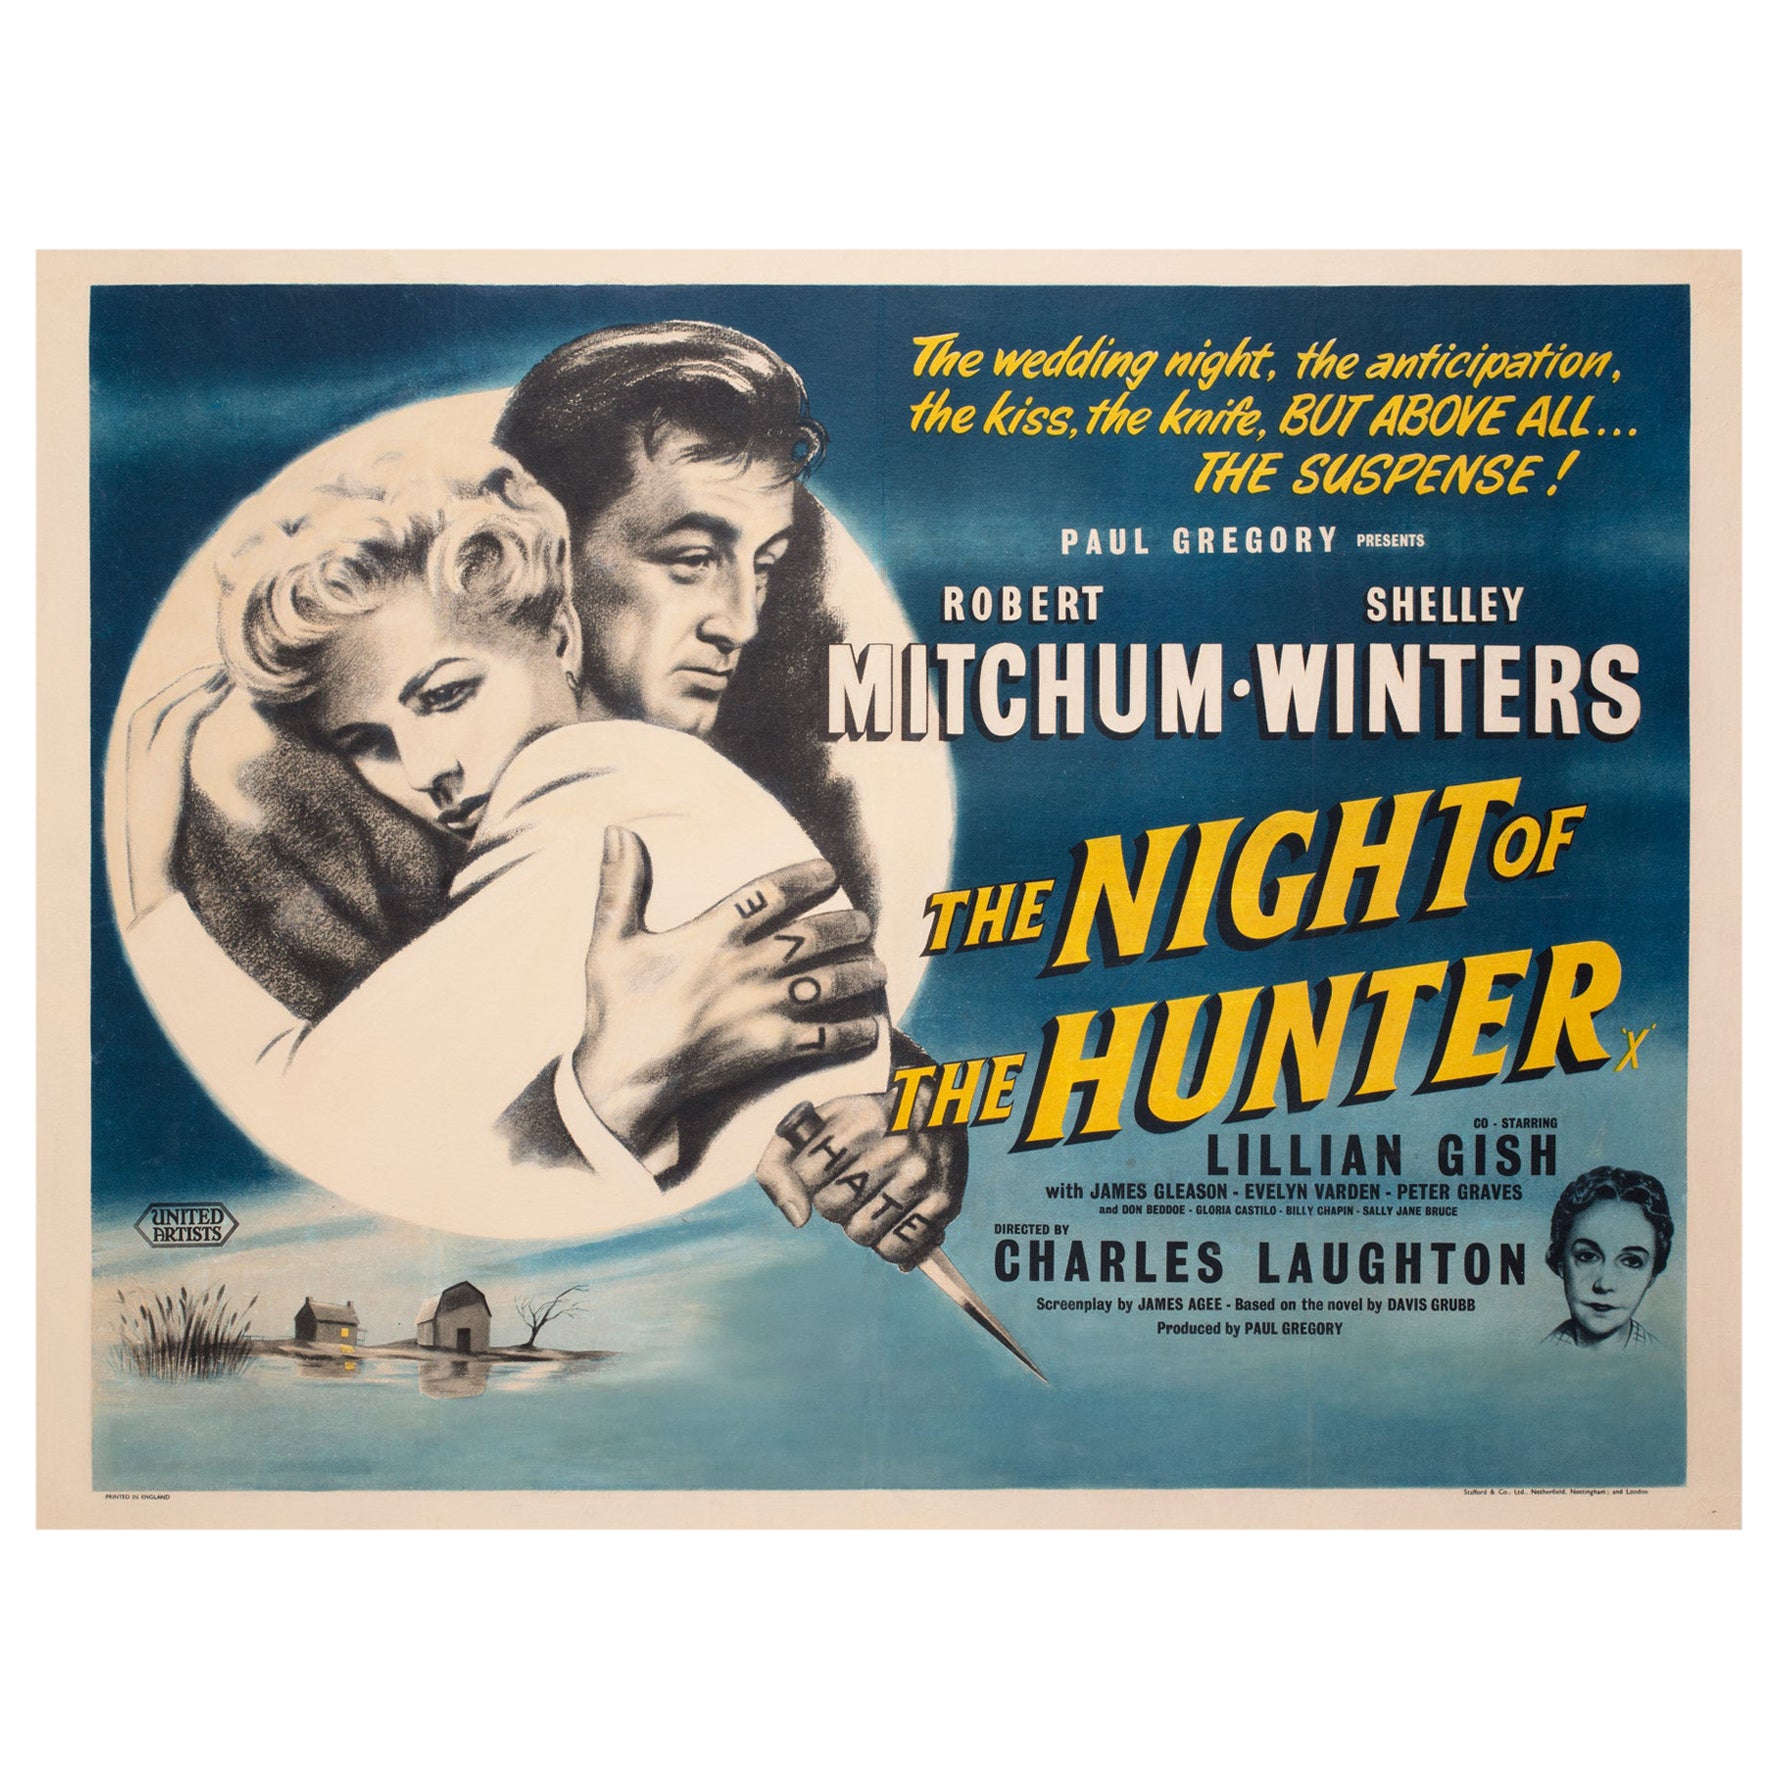 Читать за ночь охотник 10 раз. Ночь охотника 1955. The Night of the Hunter 1955 poster. Ночь охотника 1955 Постер.